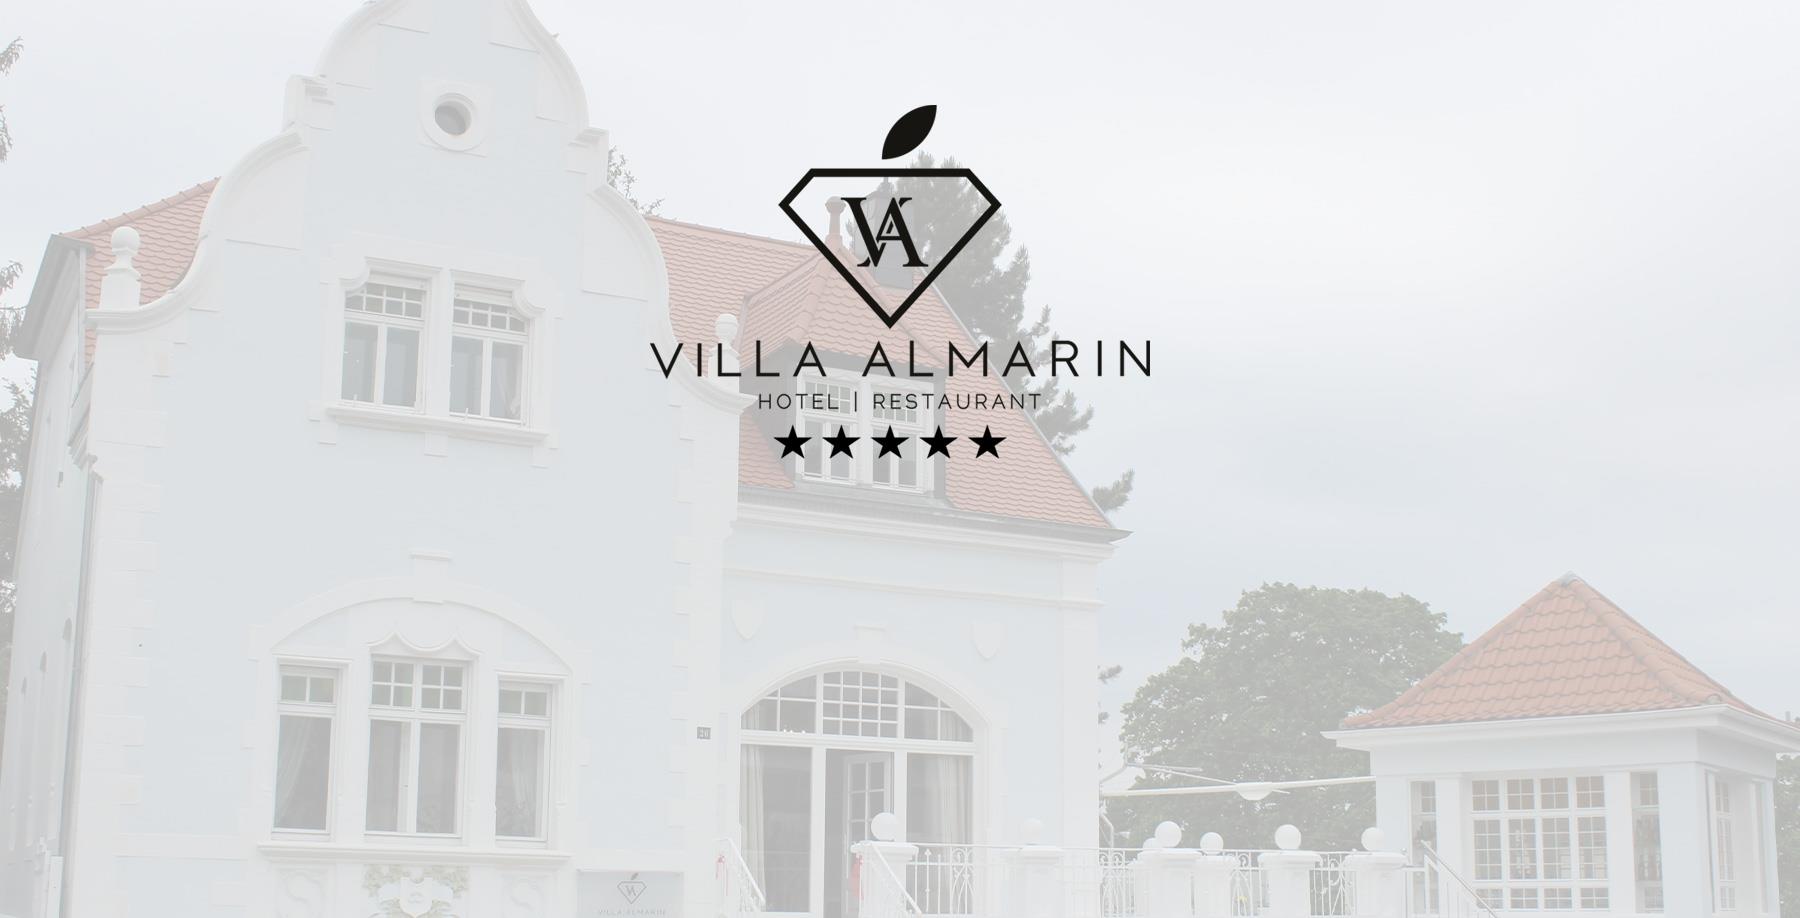 阿尔玛琳别墅 (Villa Almarin Hotel) - 圣英伯特 - 德国